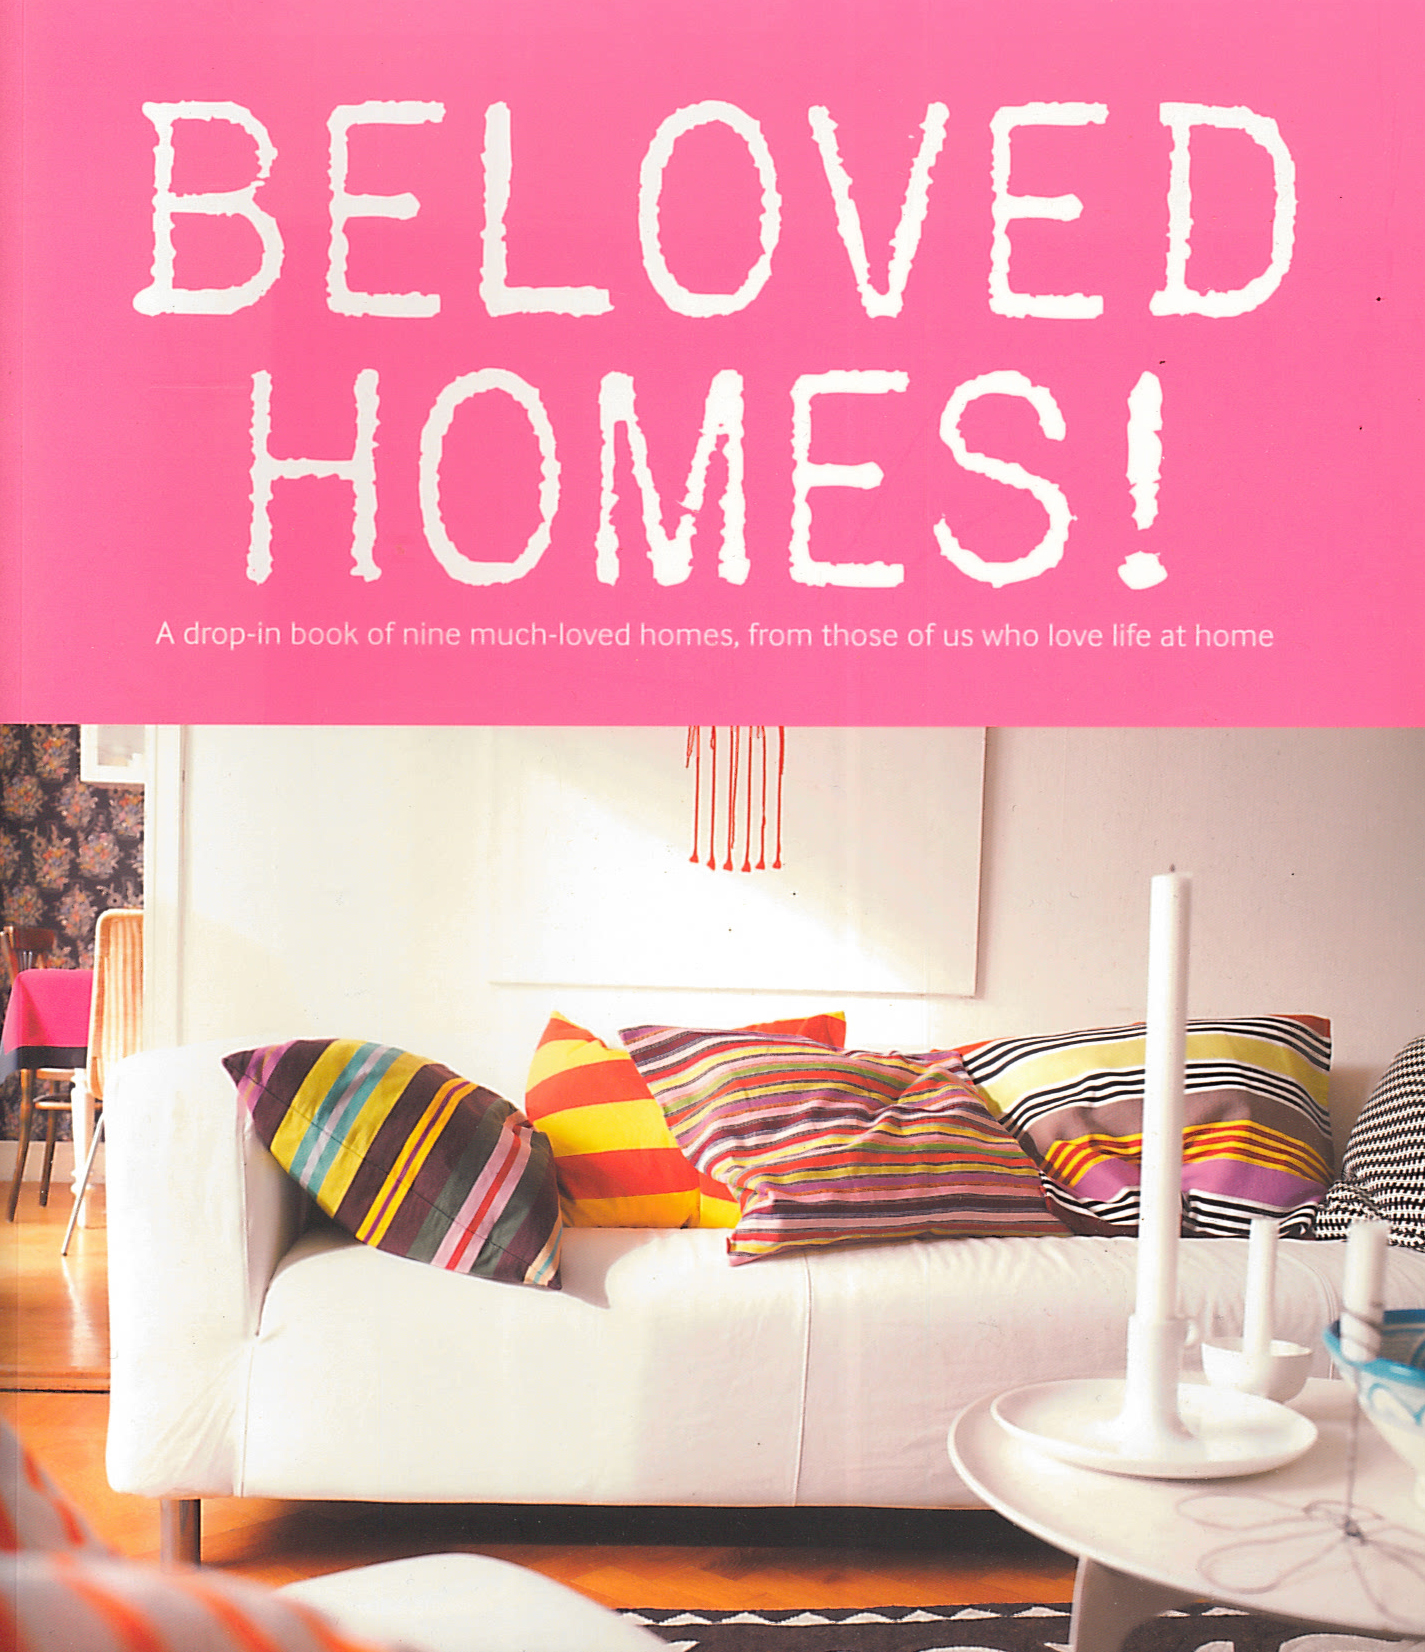 Beloved Homes